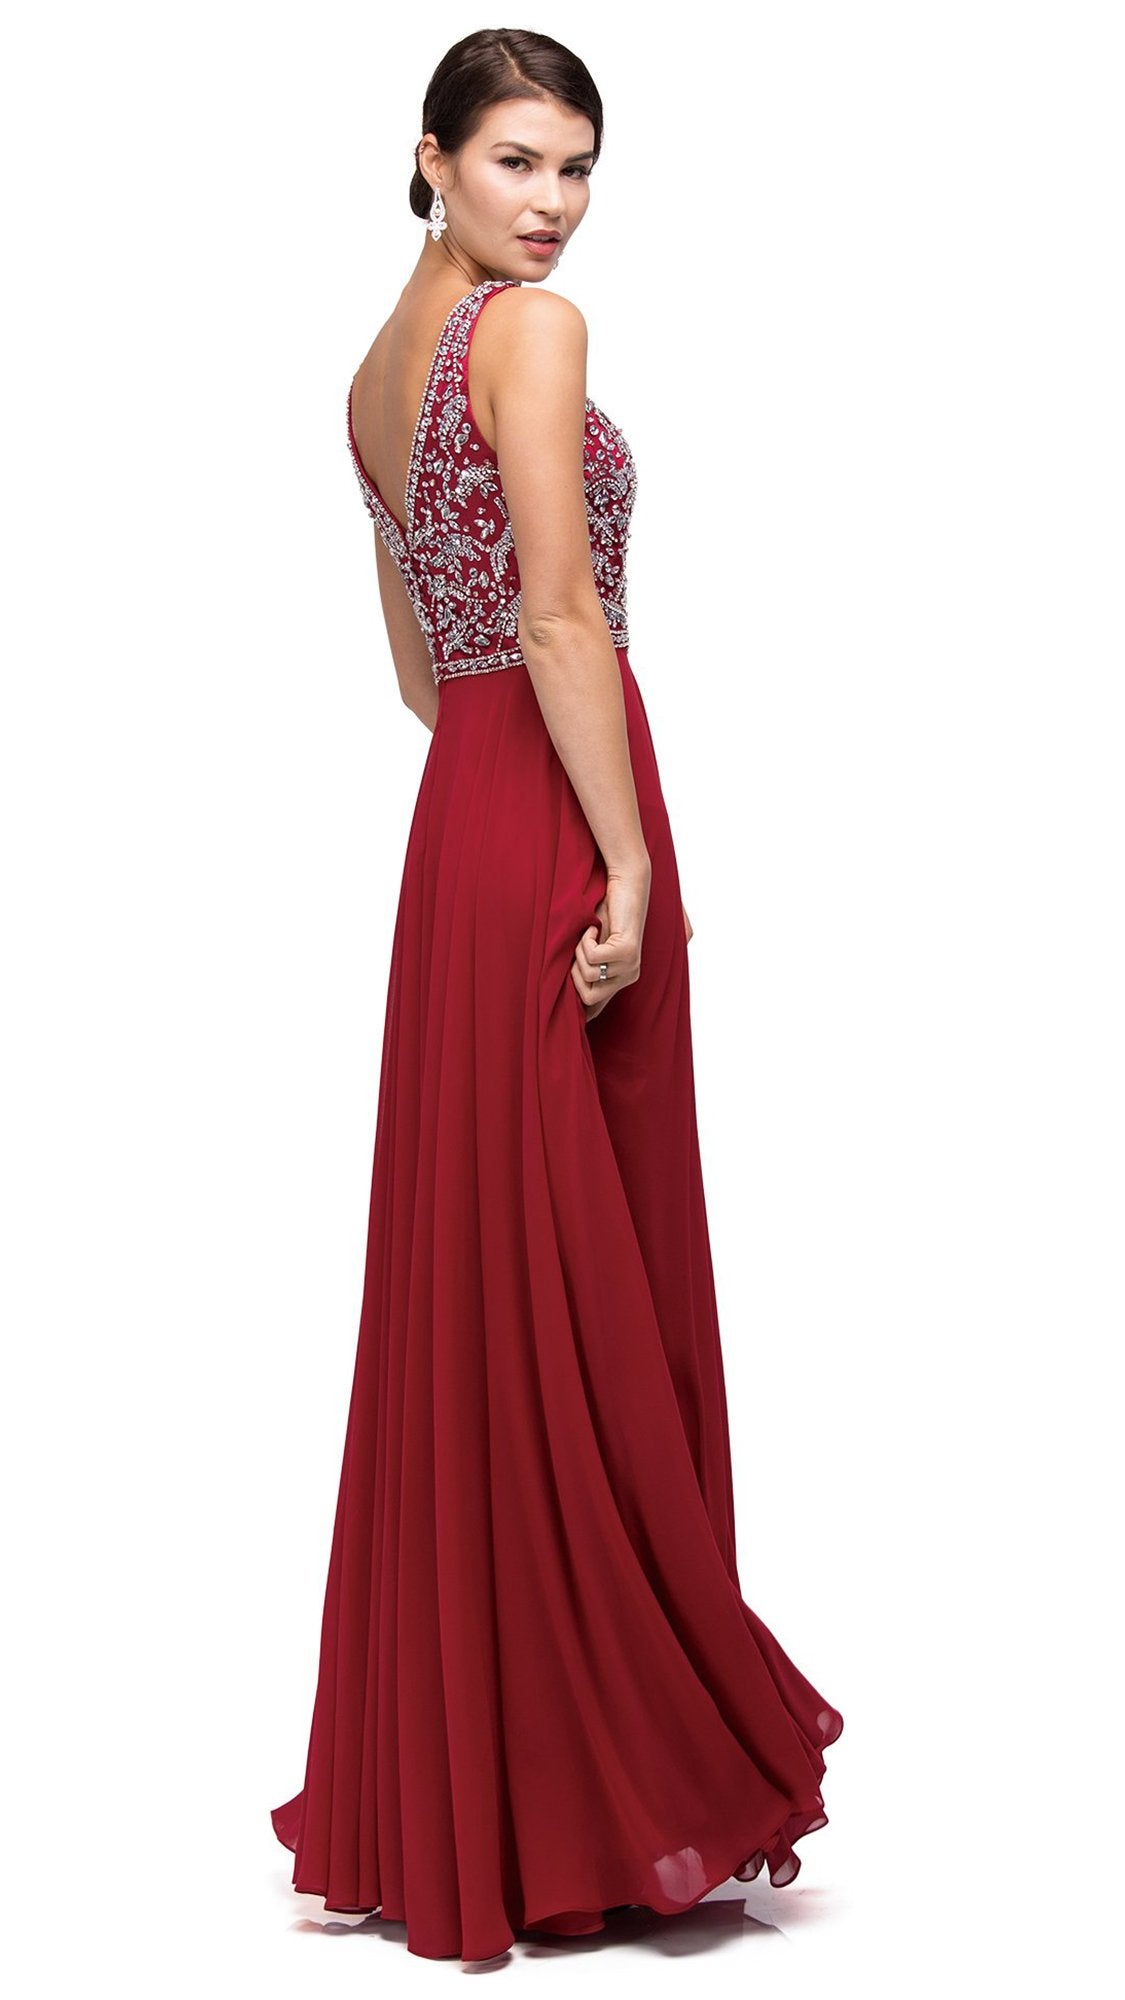 Dancing Queen - 9589SC Jeweled Bodice Chiffon Long Dress